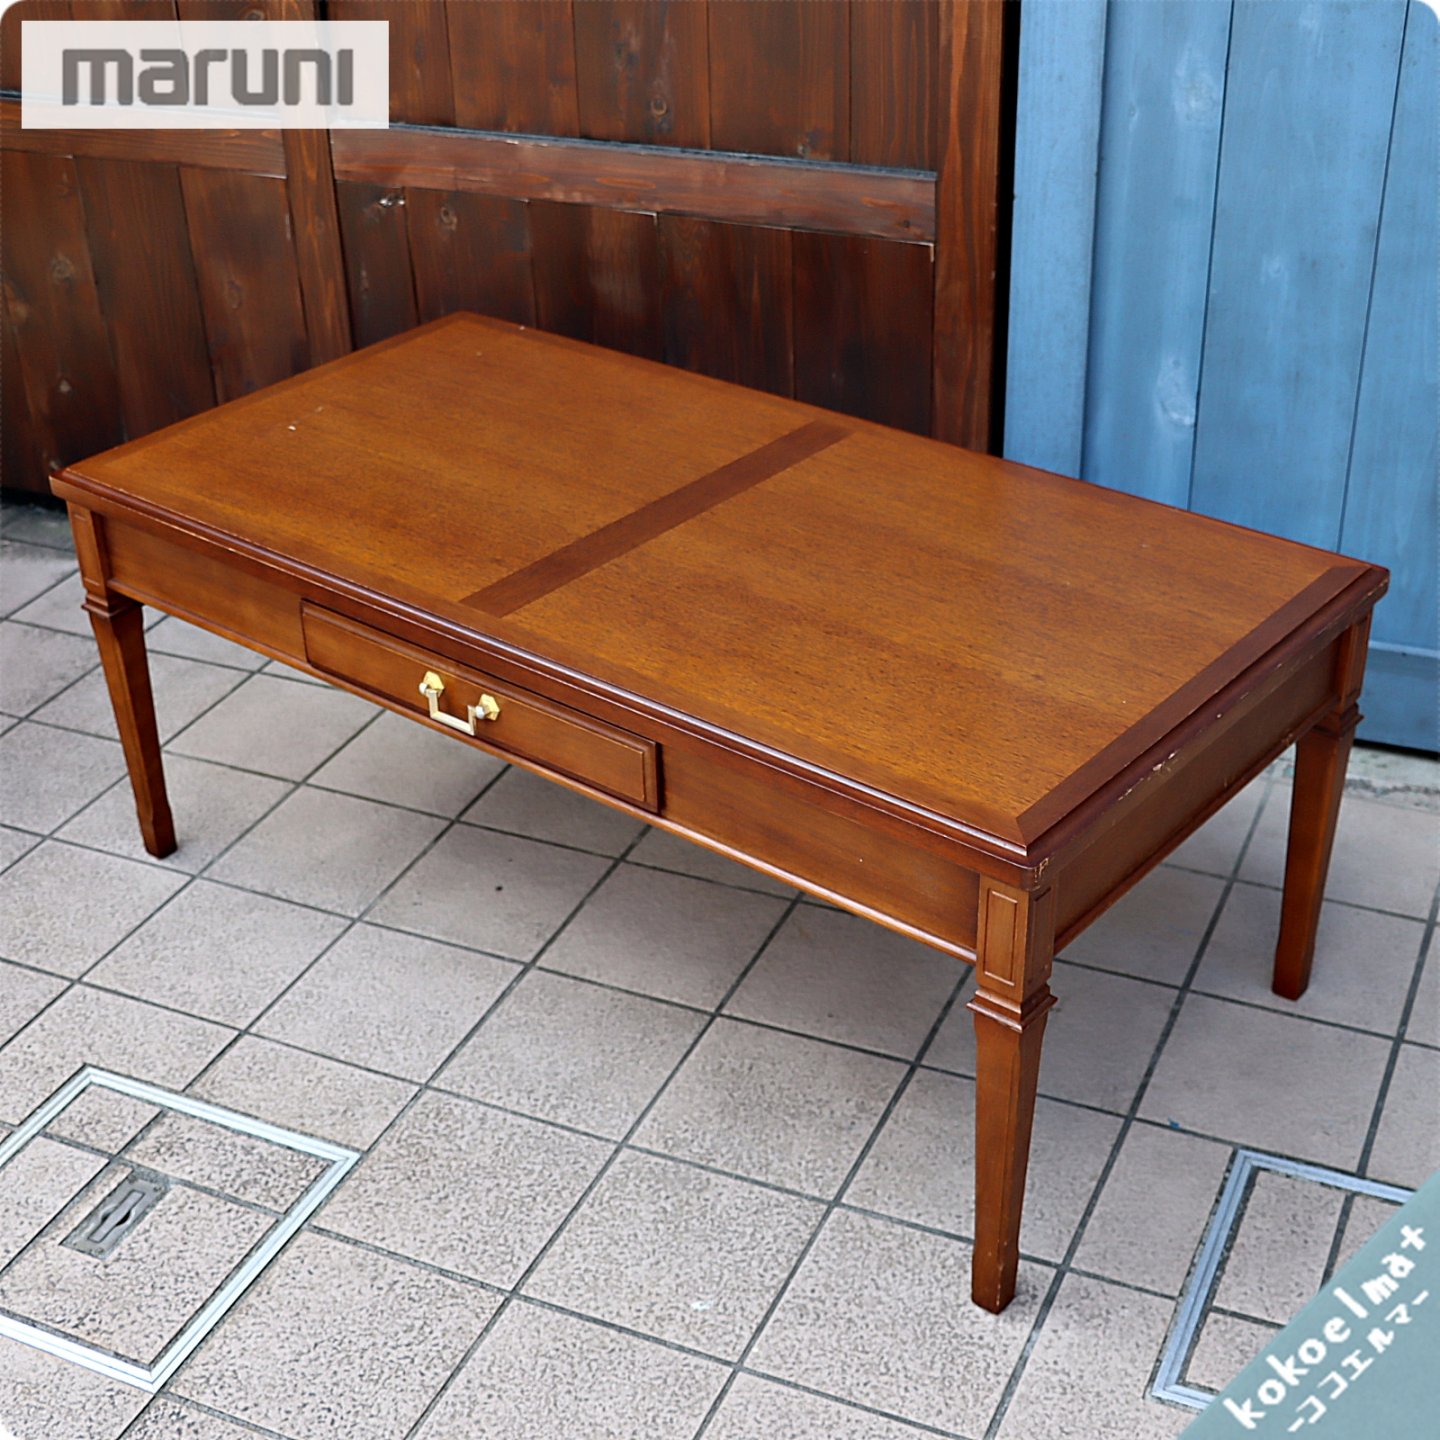 人気のmaruni(マルニ)の地中海シリーズのセンターテーブル112です！！クラシックなデザインが印象的なアンティーク調リビングテーブル 。便利な引出し付きのローテーブルはお部屋のアクセントに♪ - kokoelma -ココエルマ- 雑貨・中古家具・北欧家具・アンティーク家具の ...